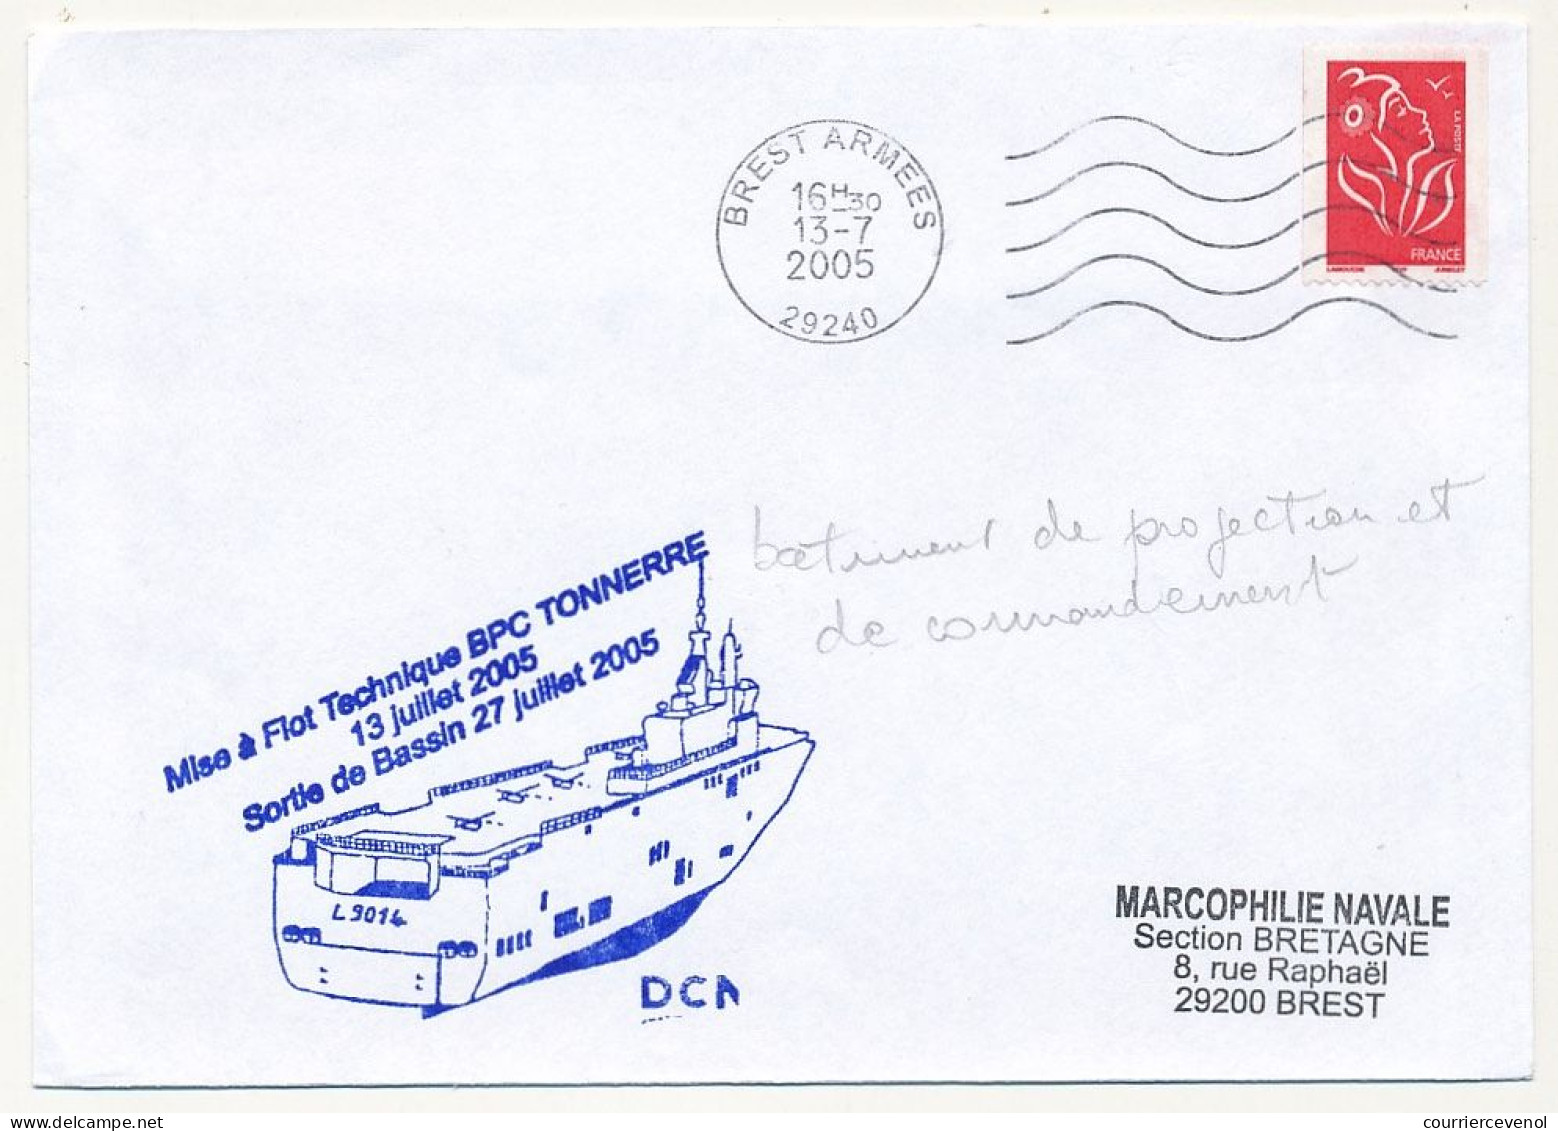 FRANCE - Env. Aff. Lamouche OMEC Brest Armées 13/7/2005 + "Mise à Flot Technique BPC TONNERRE ..." - Naval Post